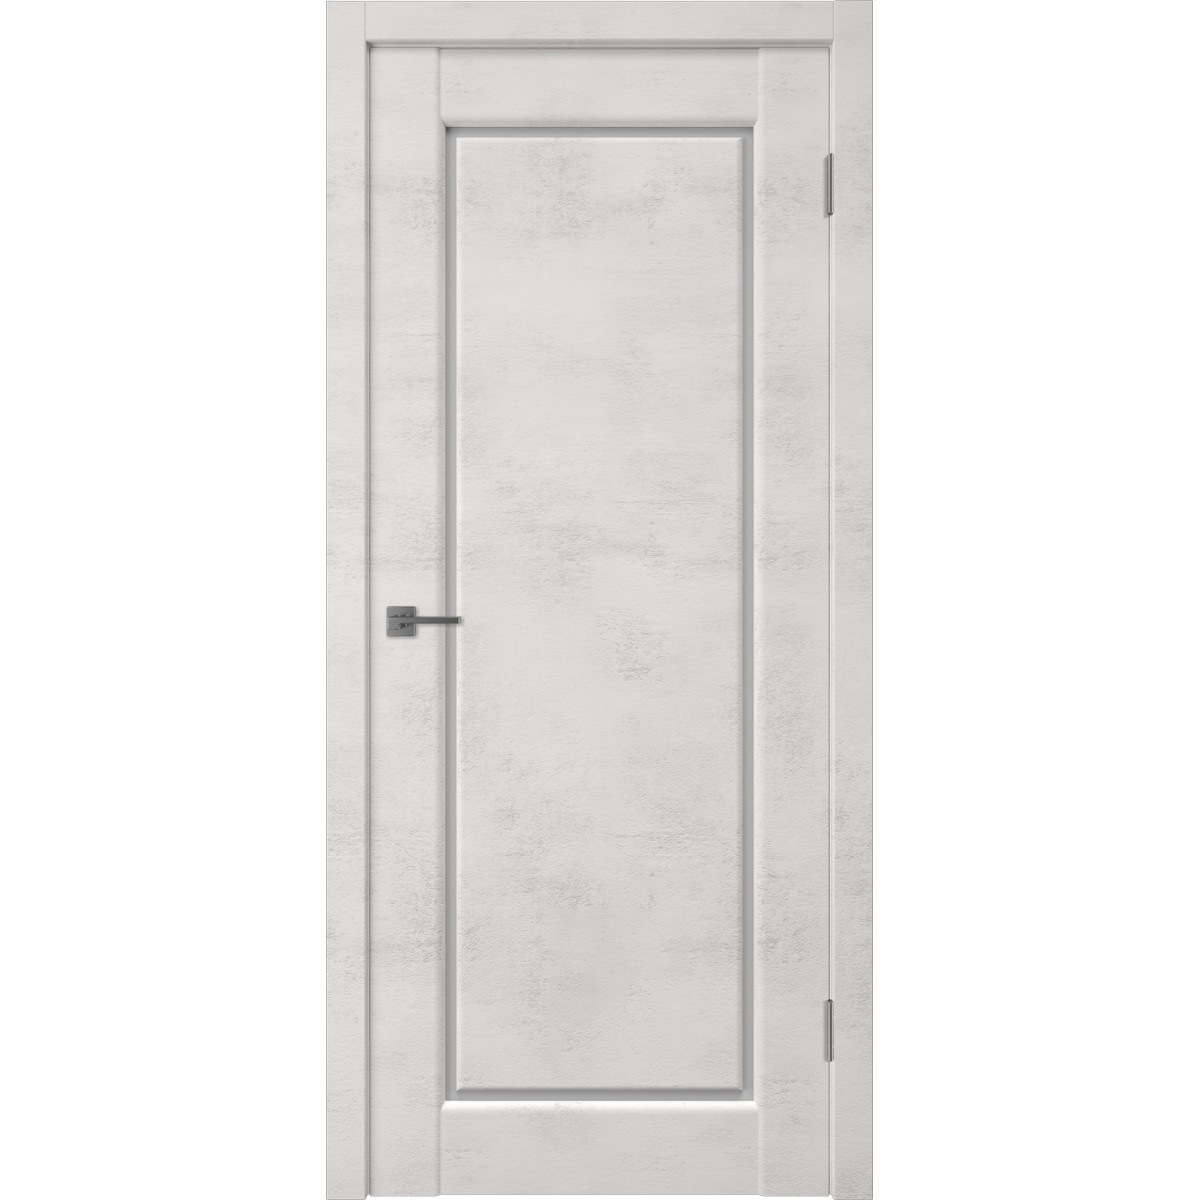 Дверь межкомнатная остеклённая Манхэттен 1 с фурнитурой 60х200 см, ПВХ, цвет лофт крем